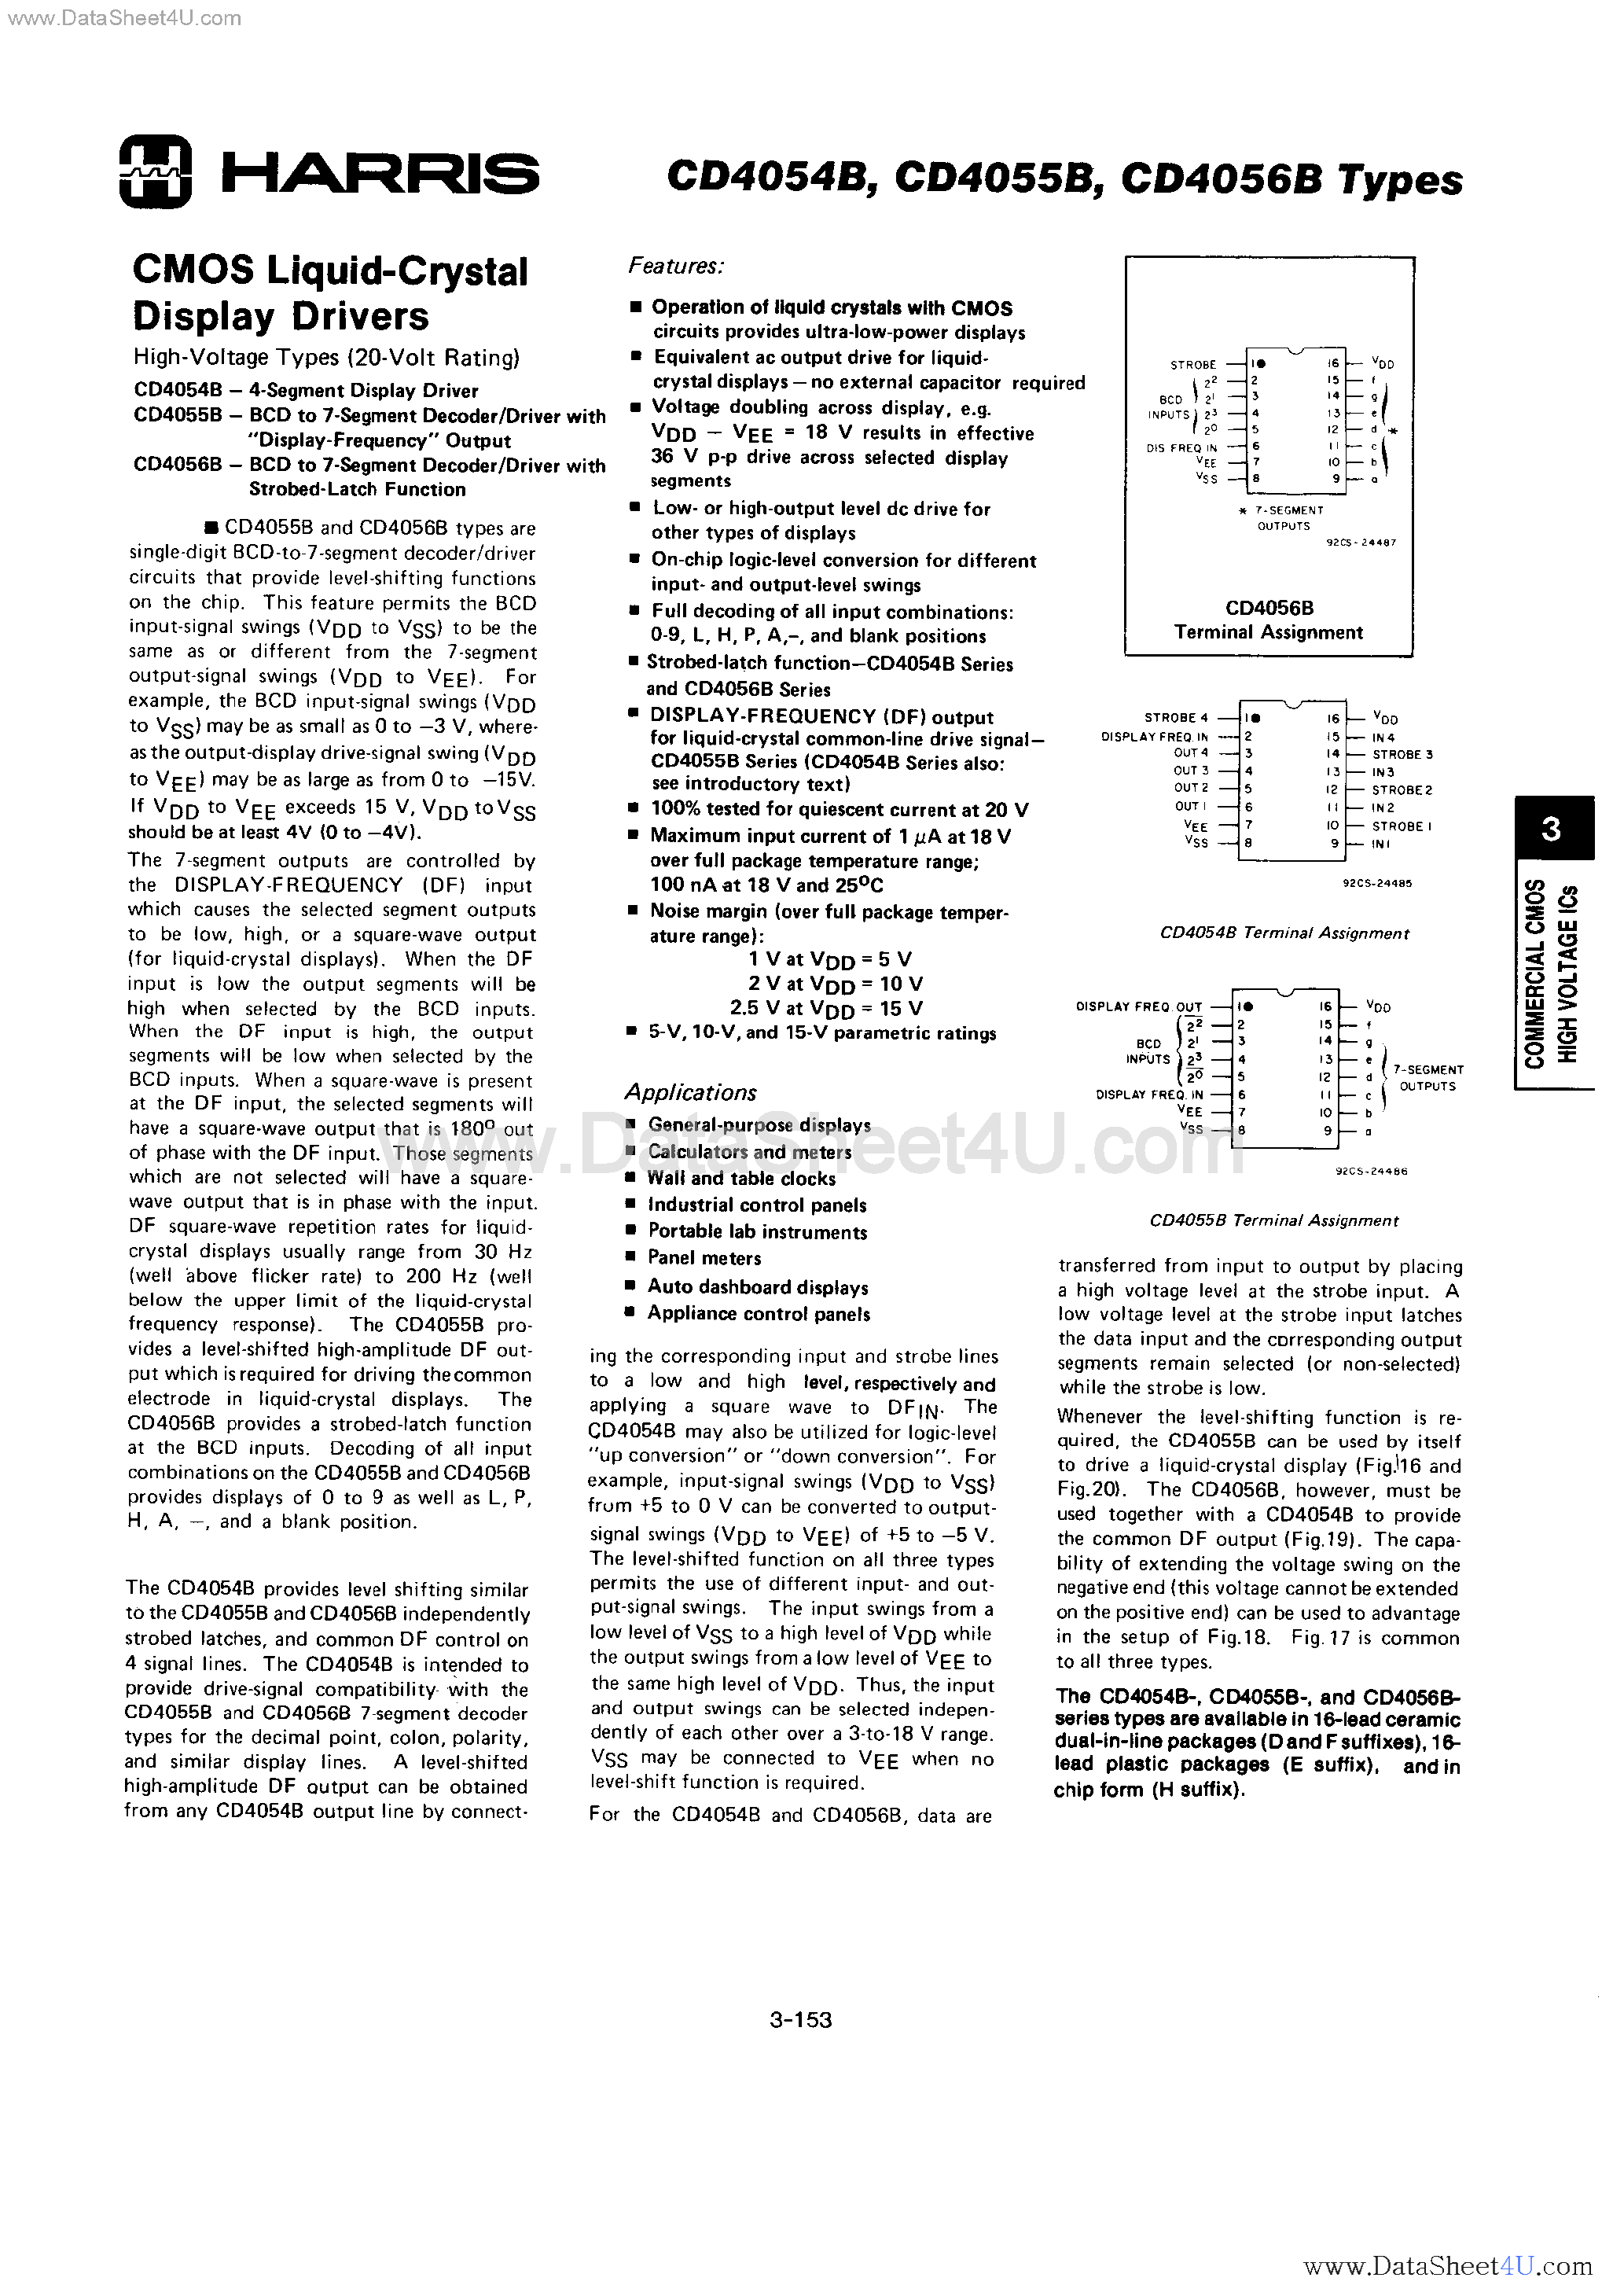 Datasheet CD4054B - (CD4054B - CD4056B) CMOS LCD Drivers page 1